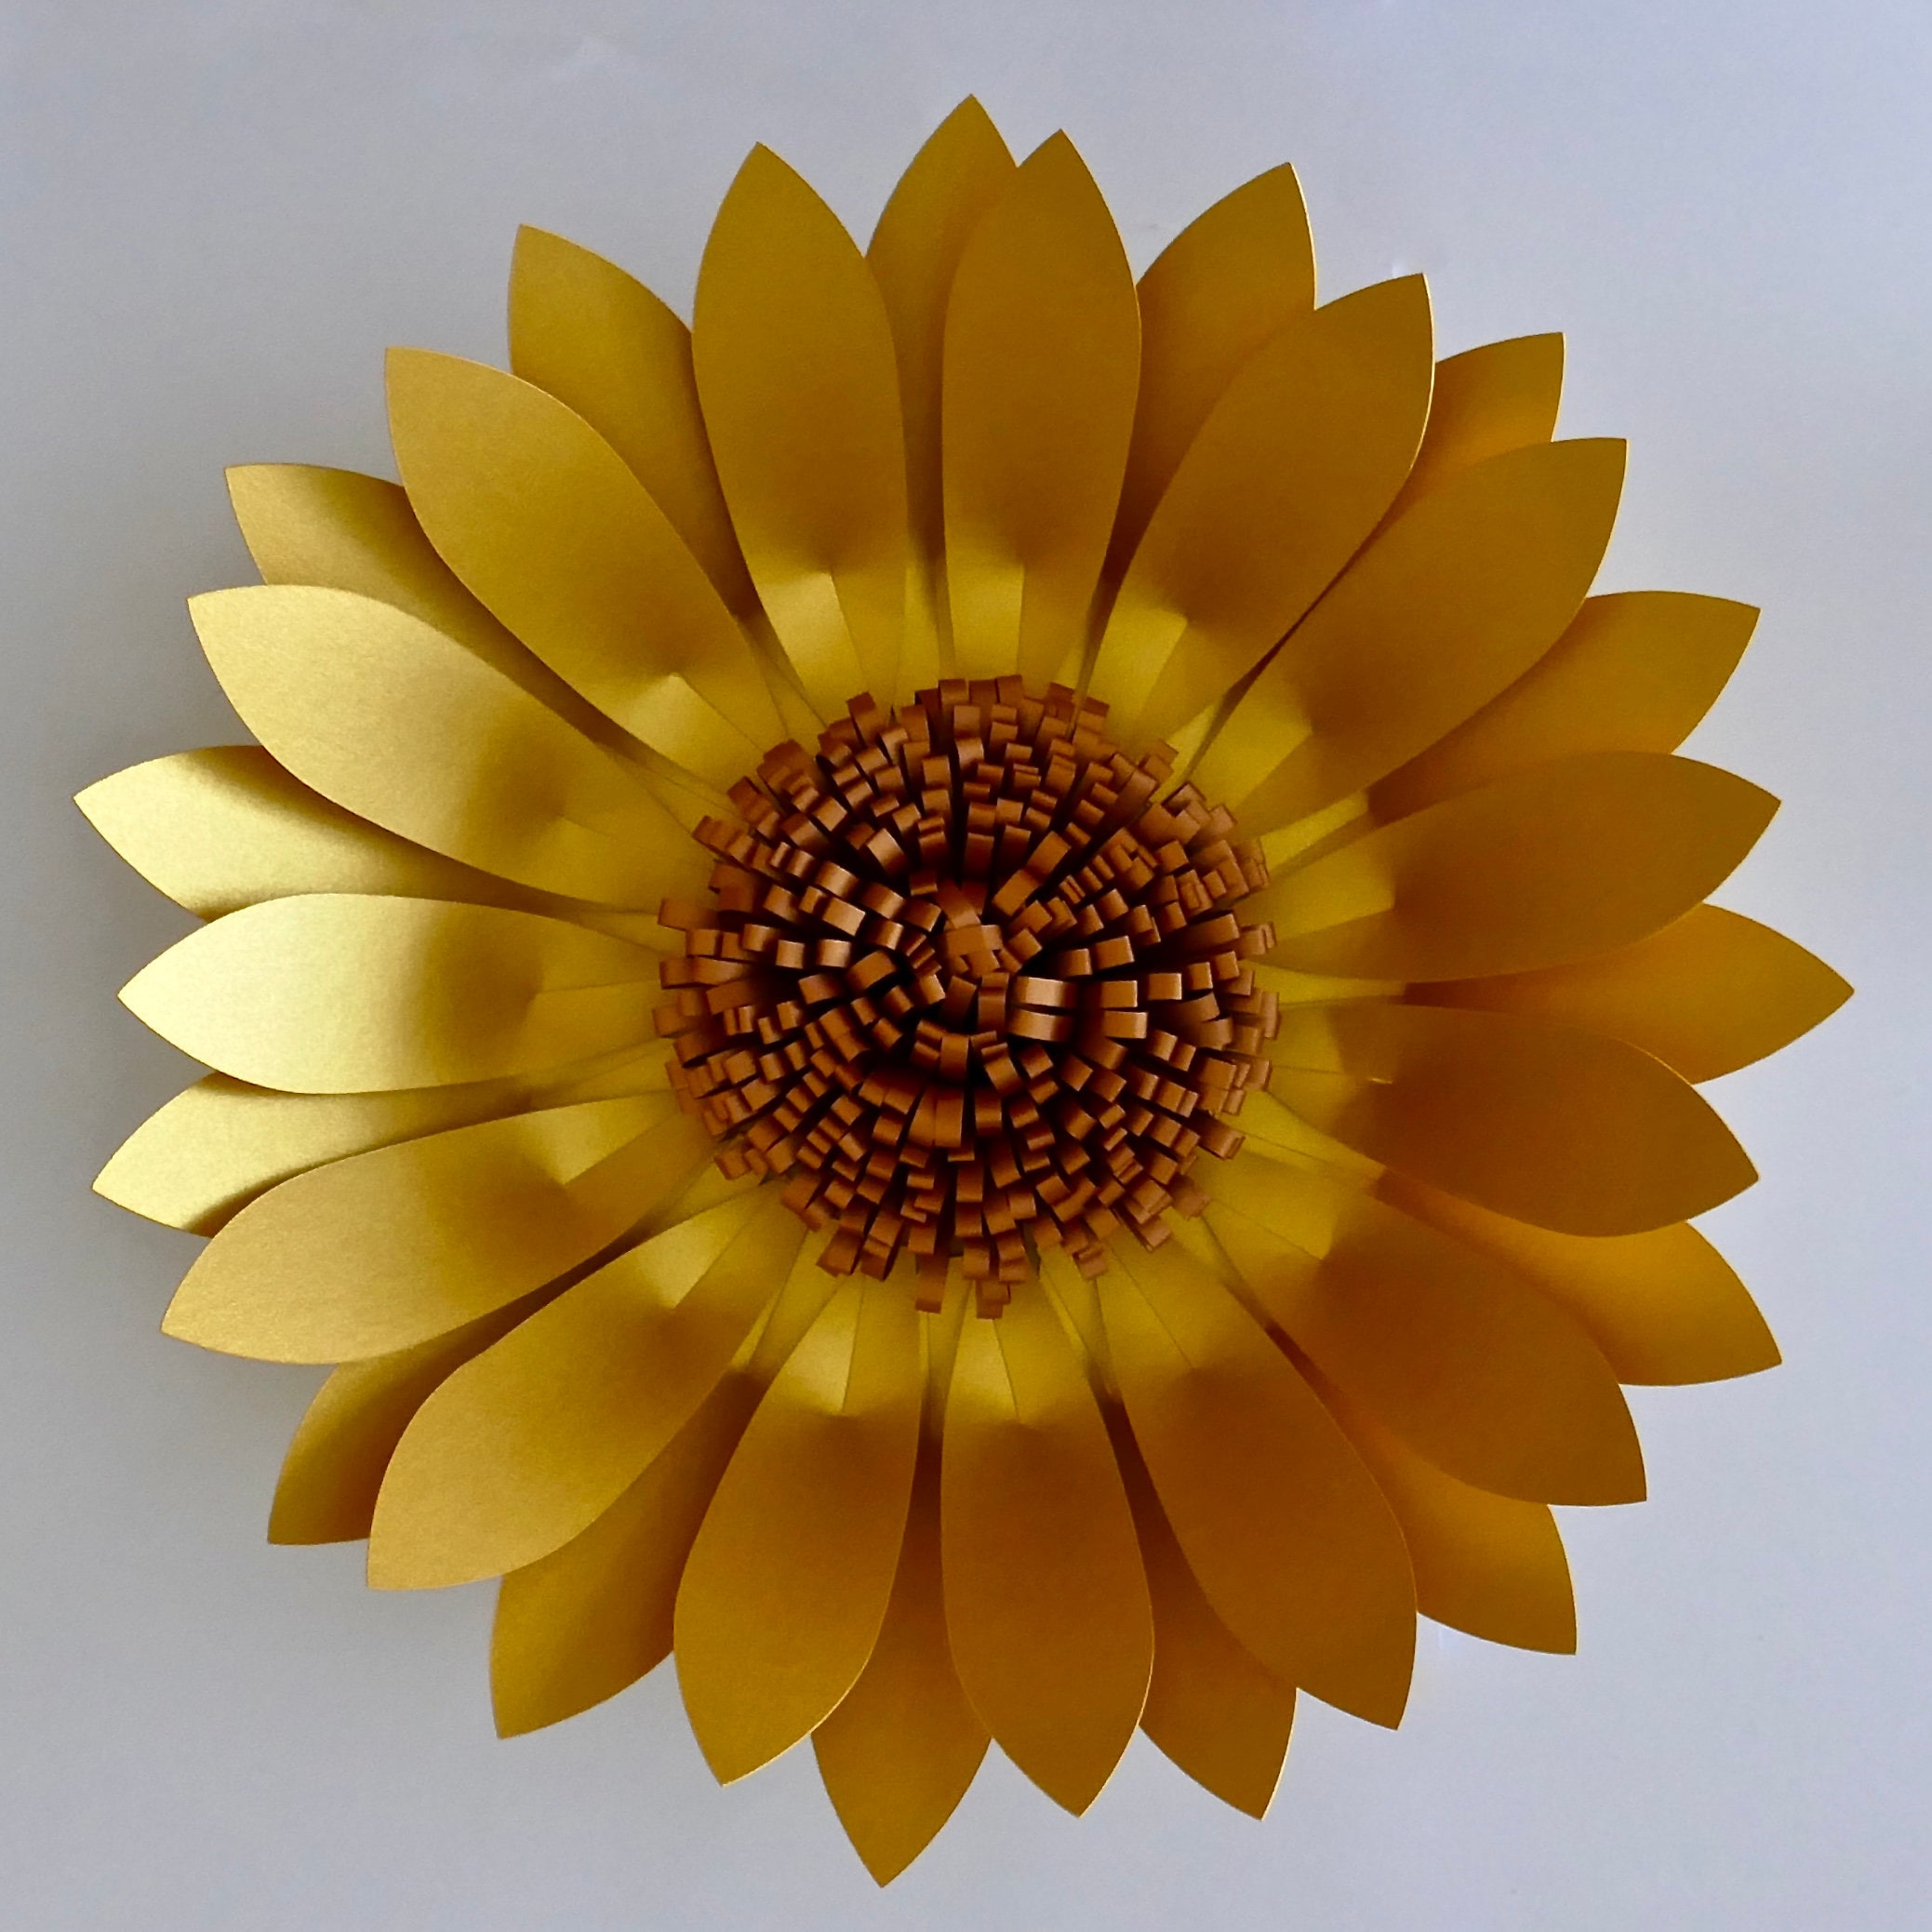 SVG Template, 3D Golden Sunflower Digital SVG Template For Cutting